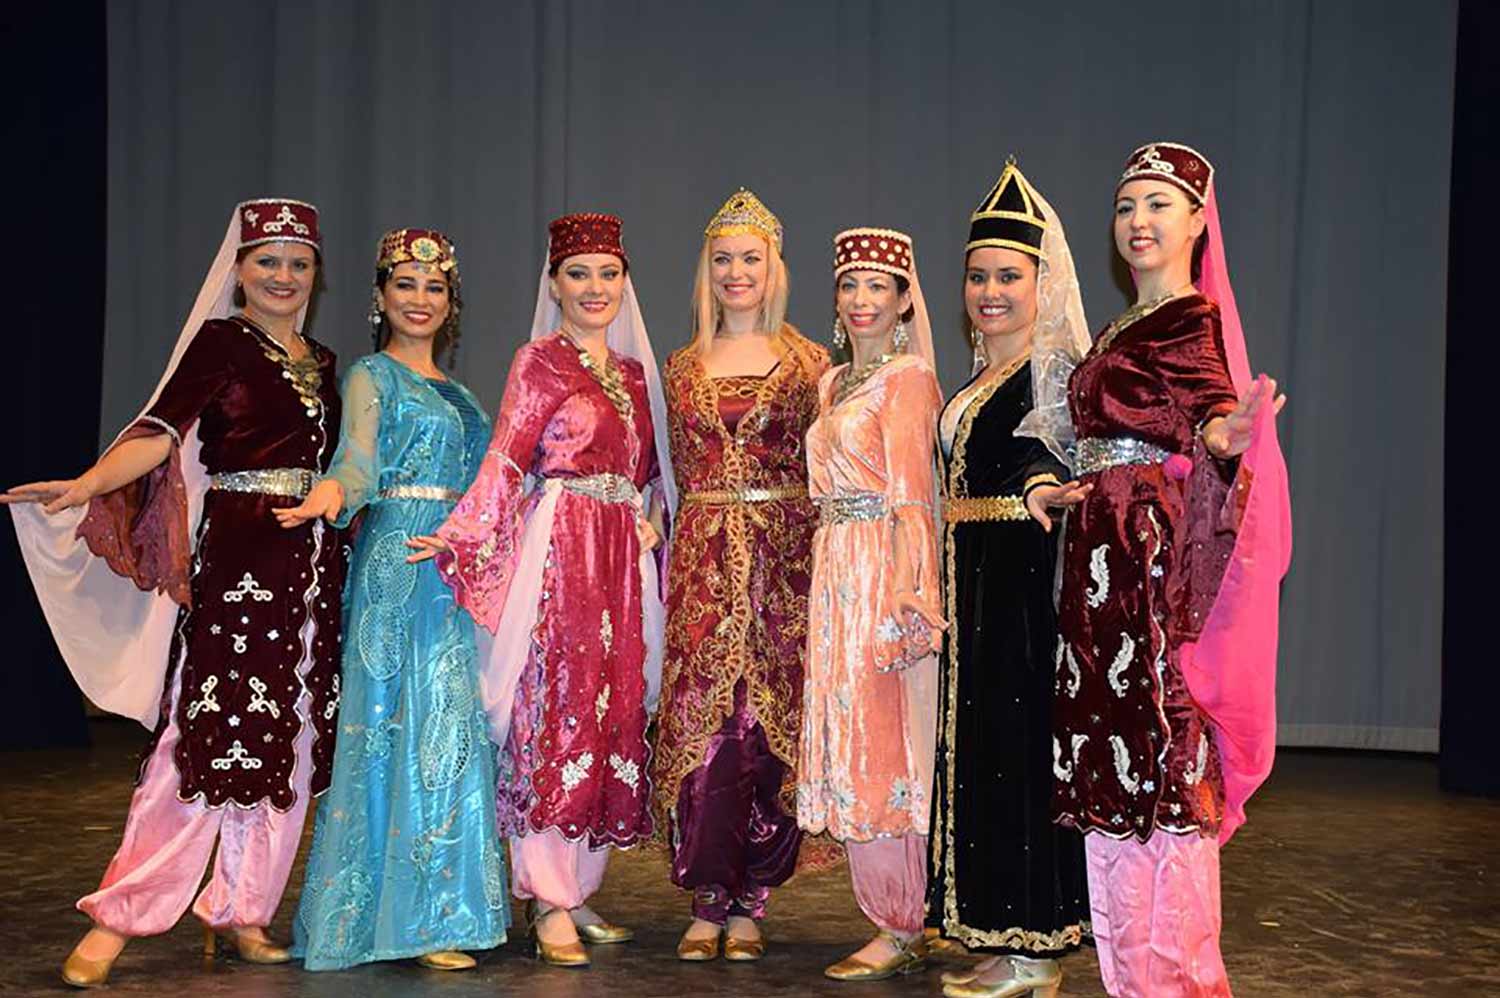 Global Celebration of Dance - Turkish Dancers 